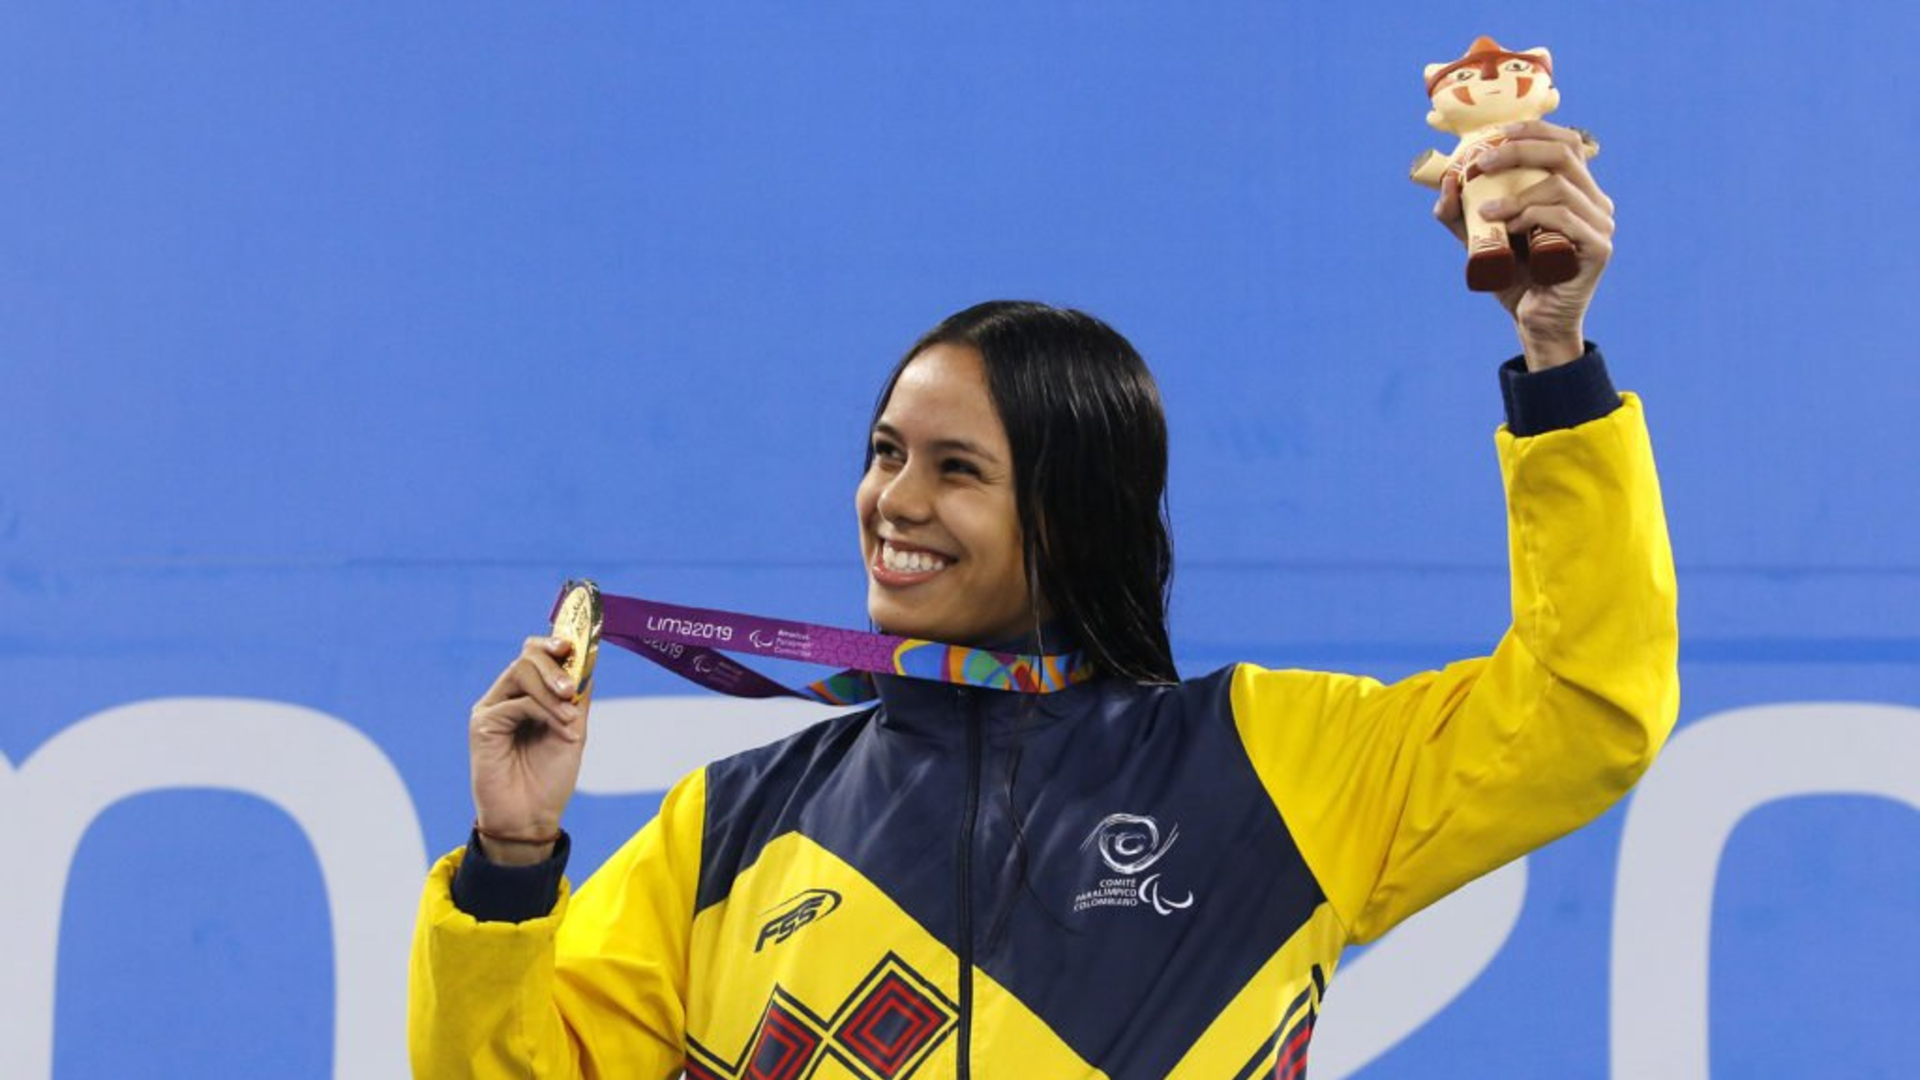  María Paula Barrera, ganó medalla de bronce en los 100 metros libres categoría S10, con un tiempo de 01m 02s 59cs y un puntaje de 917, ubicándose en el 8º lugar en el ranking a Tokio 2020. - Comité Paralímpico Colombiano.